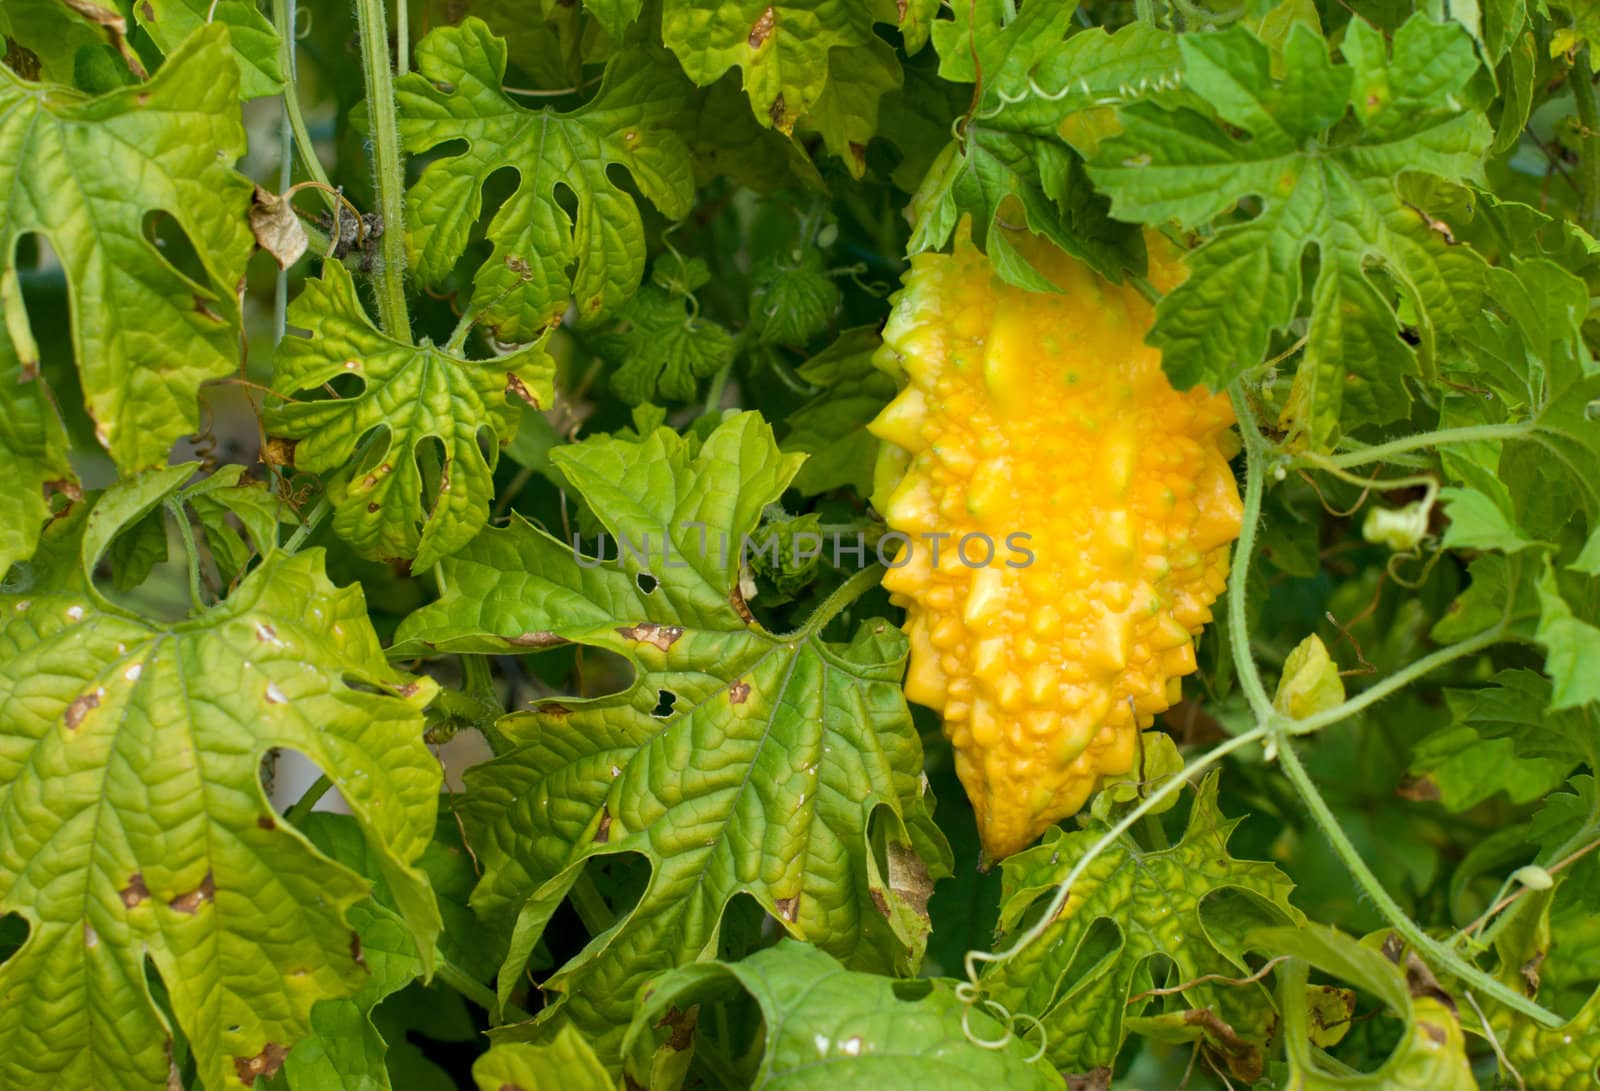 Yellow momordika on the bush - Indian cucumber